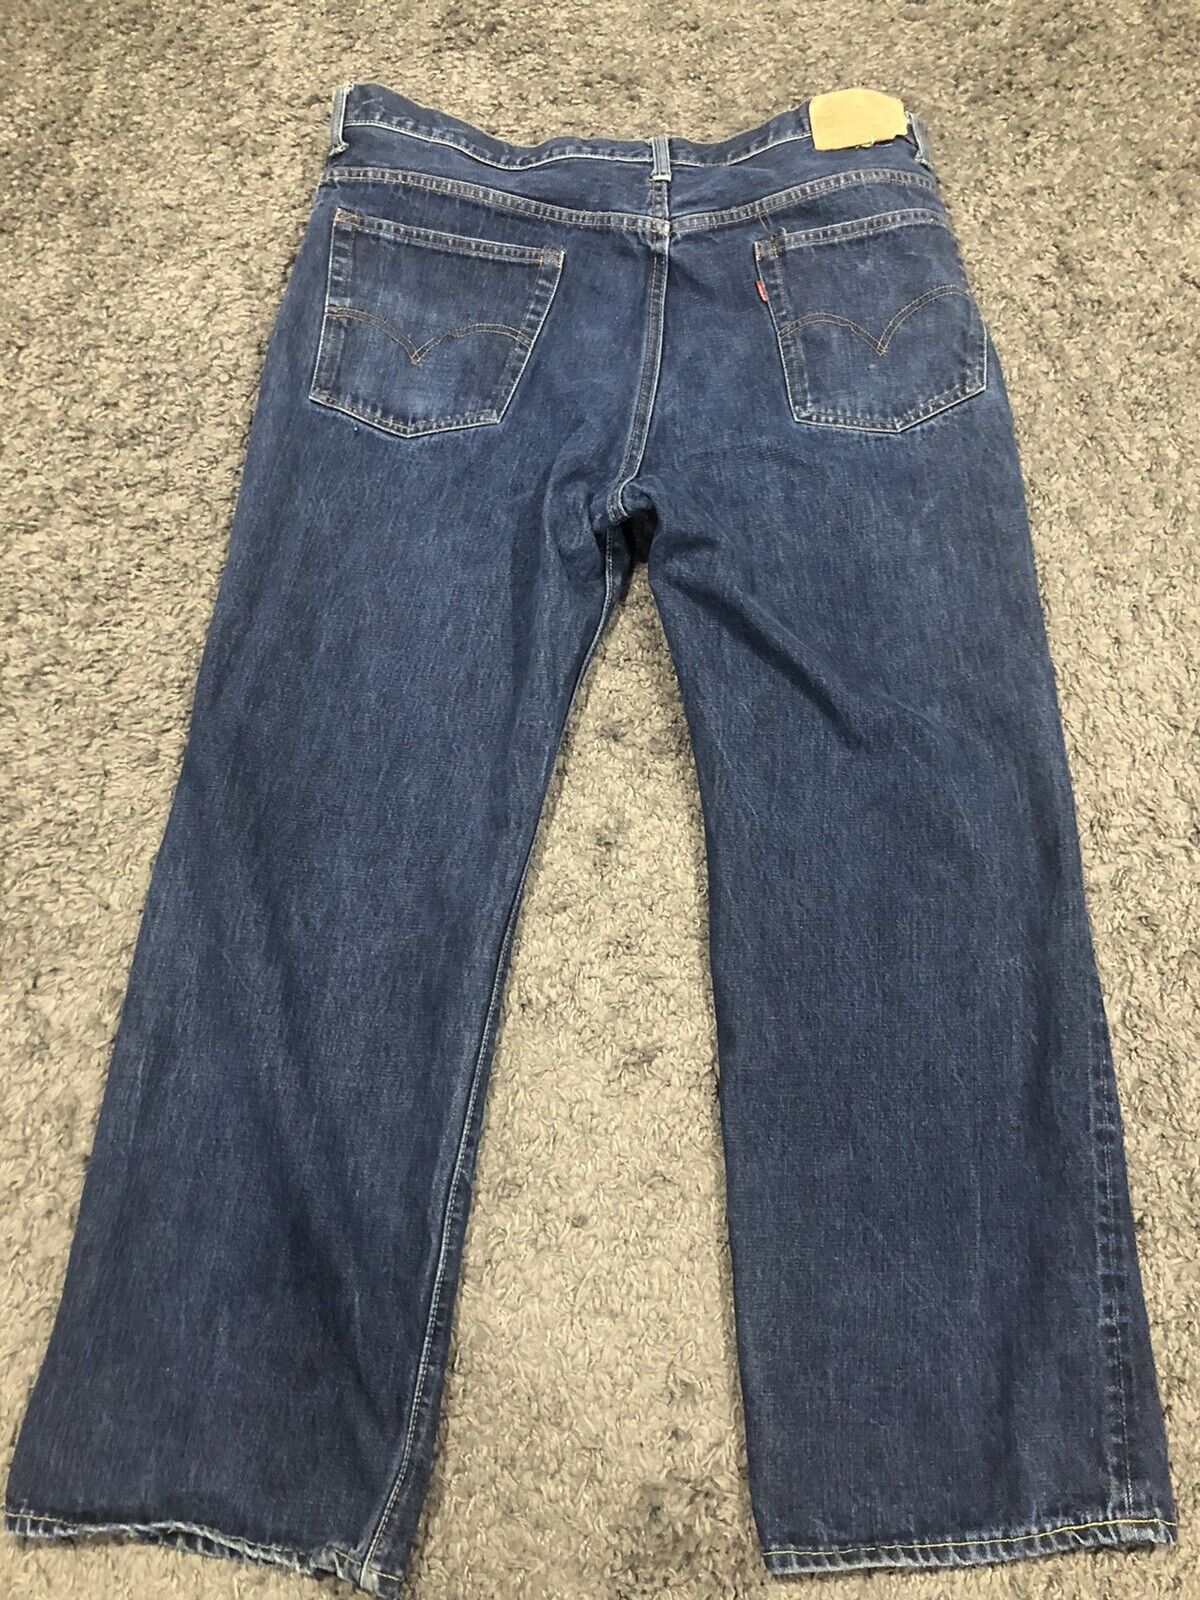 Vintage Levis 517 Big E Jeans 42x28 1960’s Talon Zip Rare 517-0217  Distressed